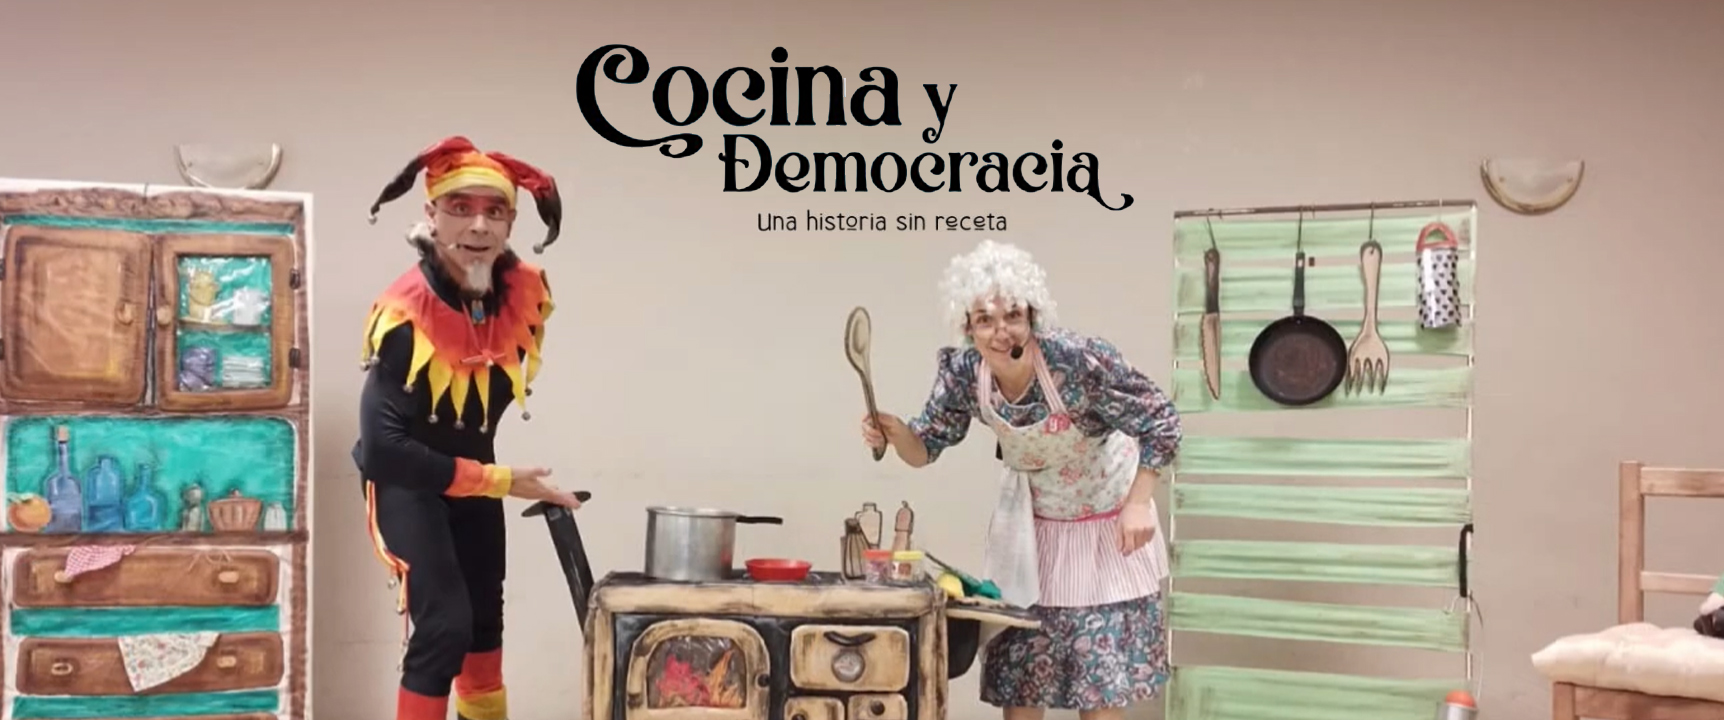 Cocina Y Democracia